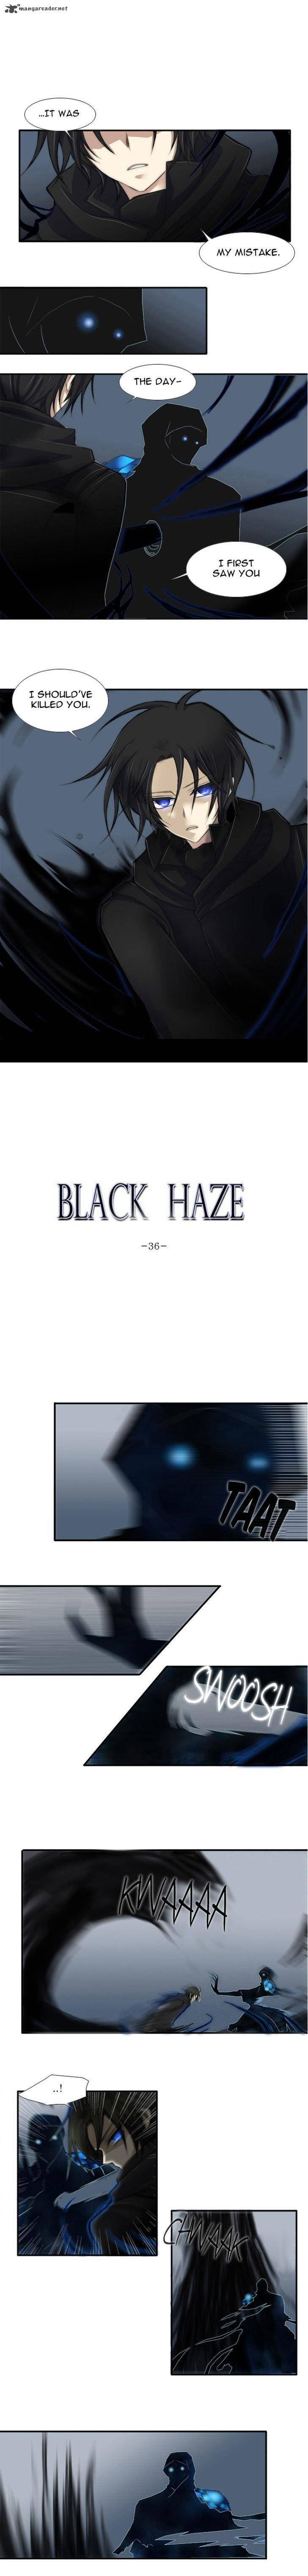 black_haze_36_2